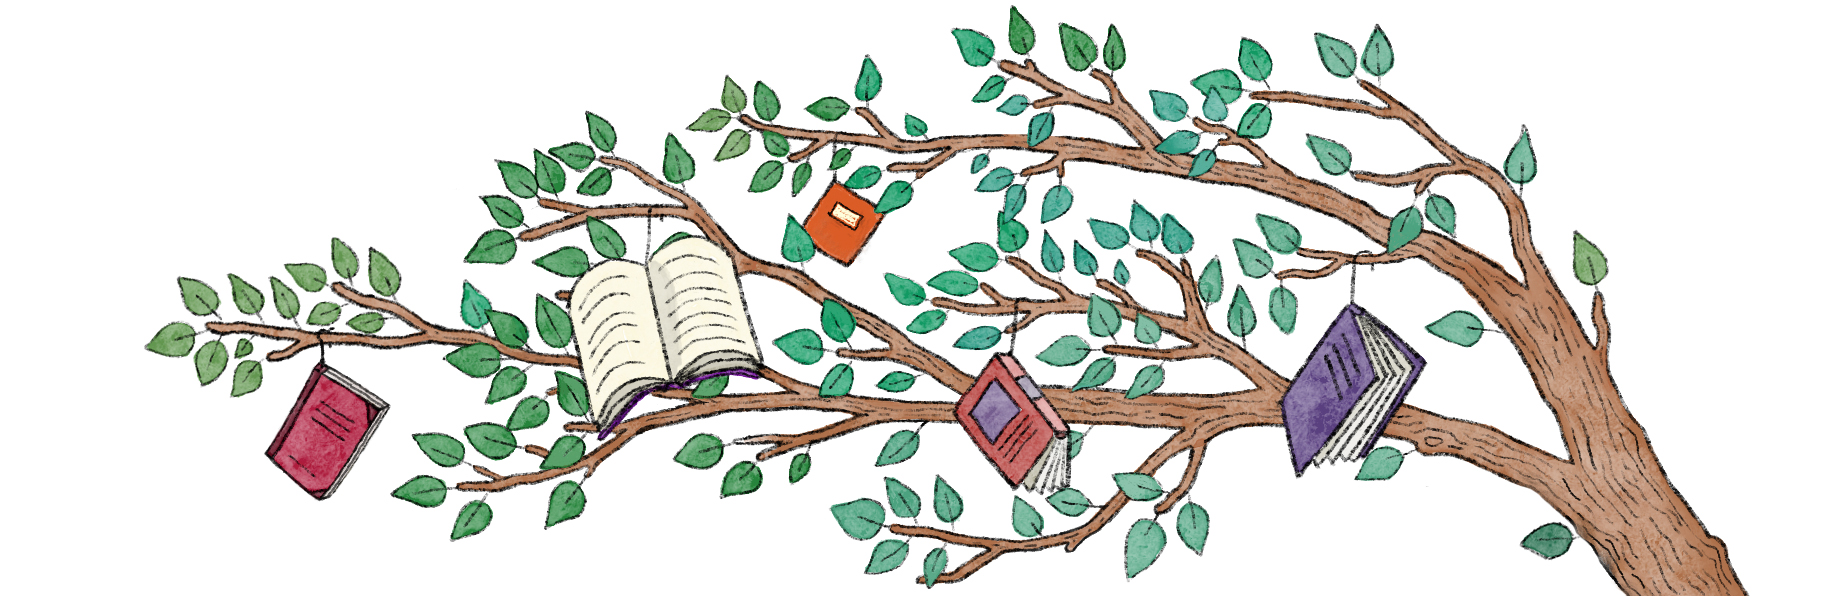 En illustrerad trädgren på vilken det hänger olikfärgade böcker